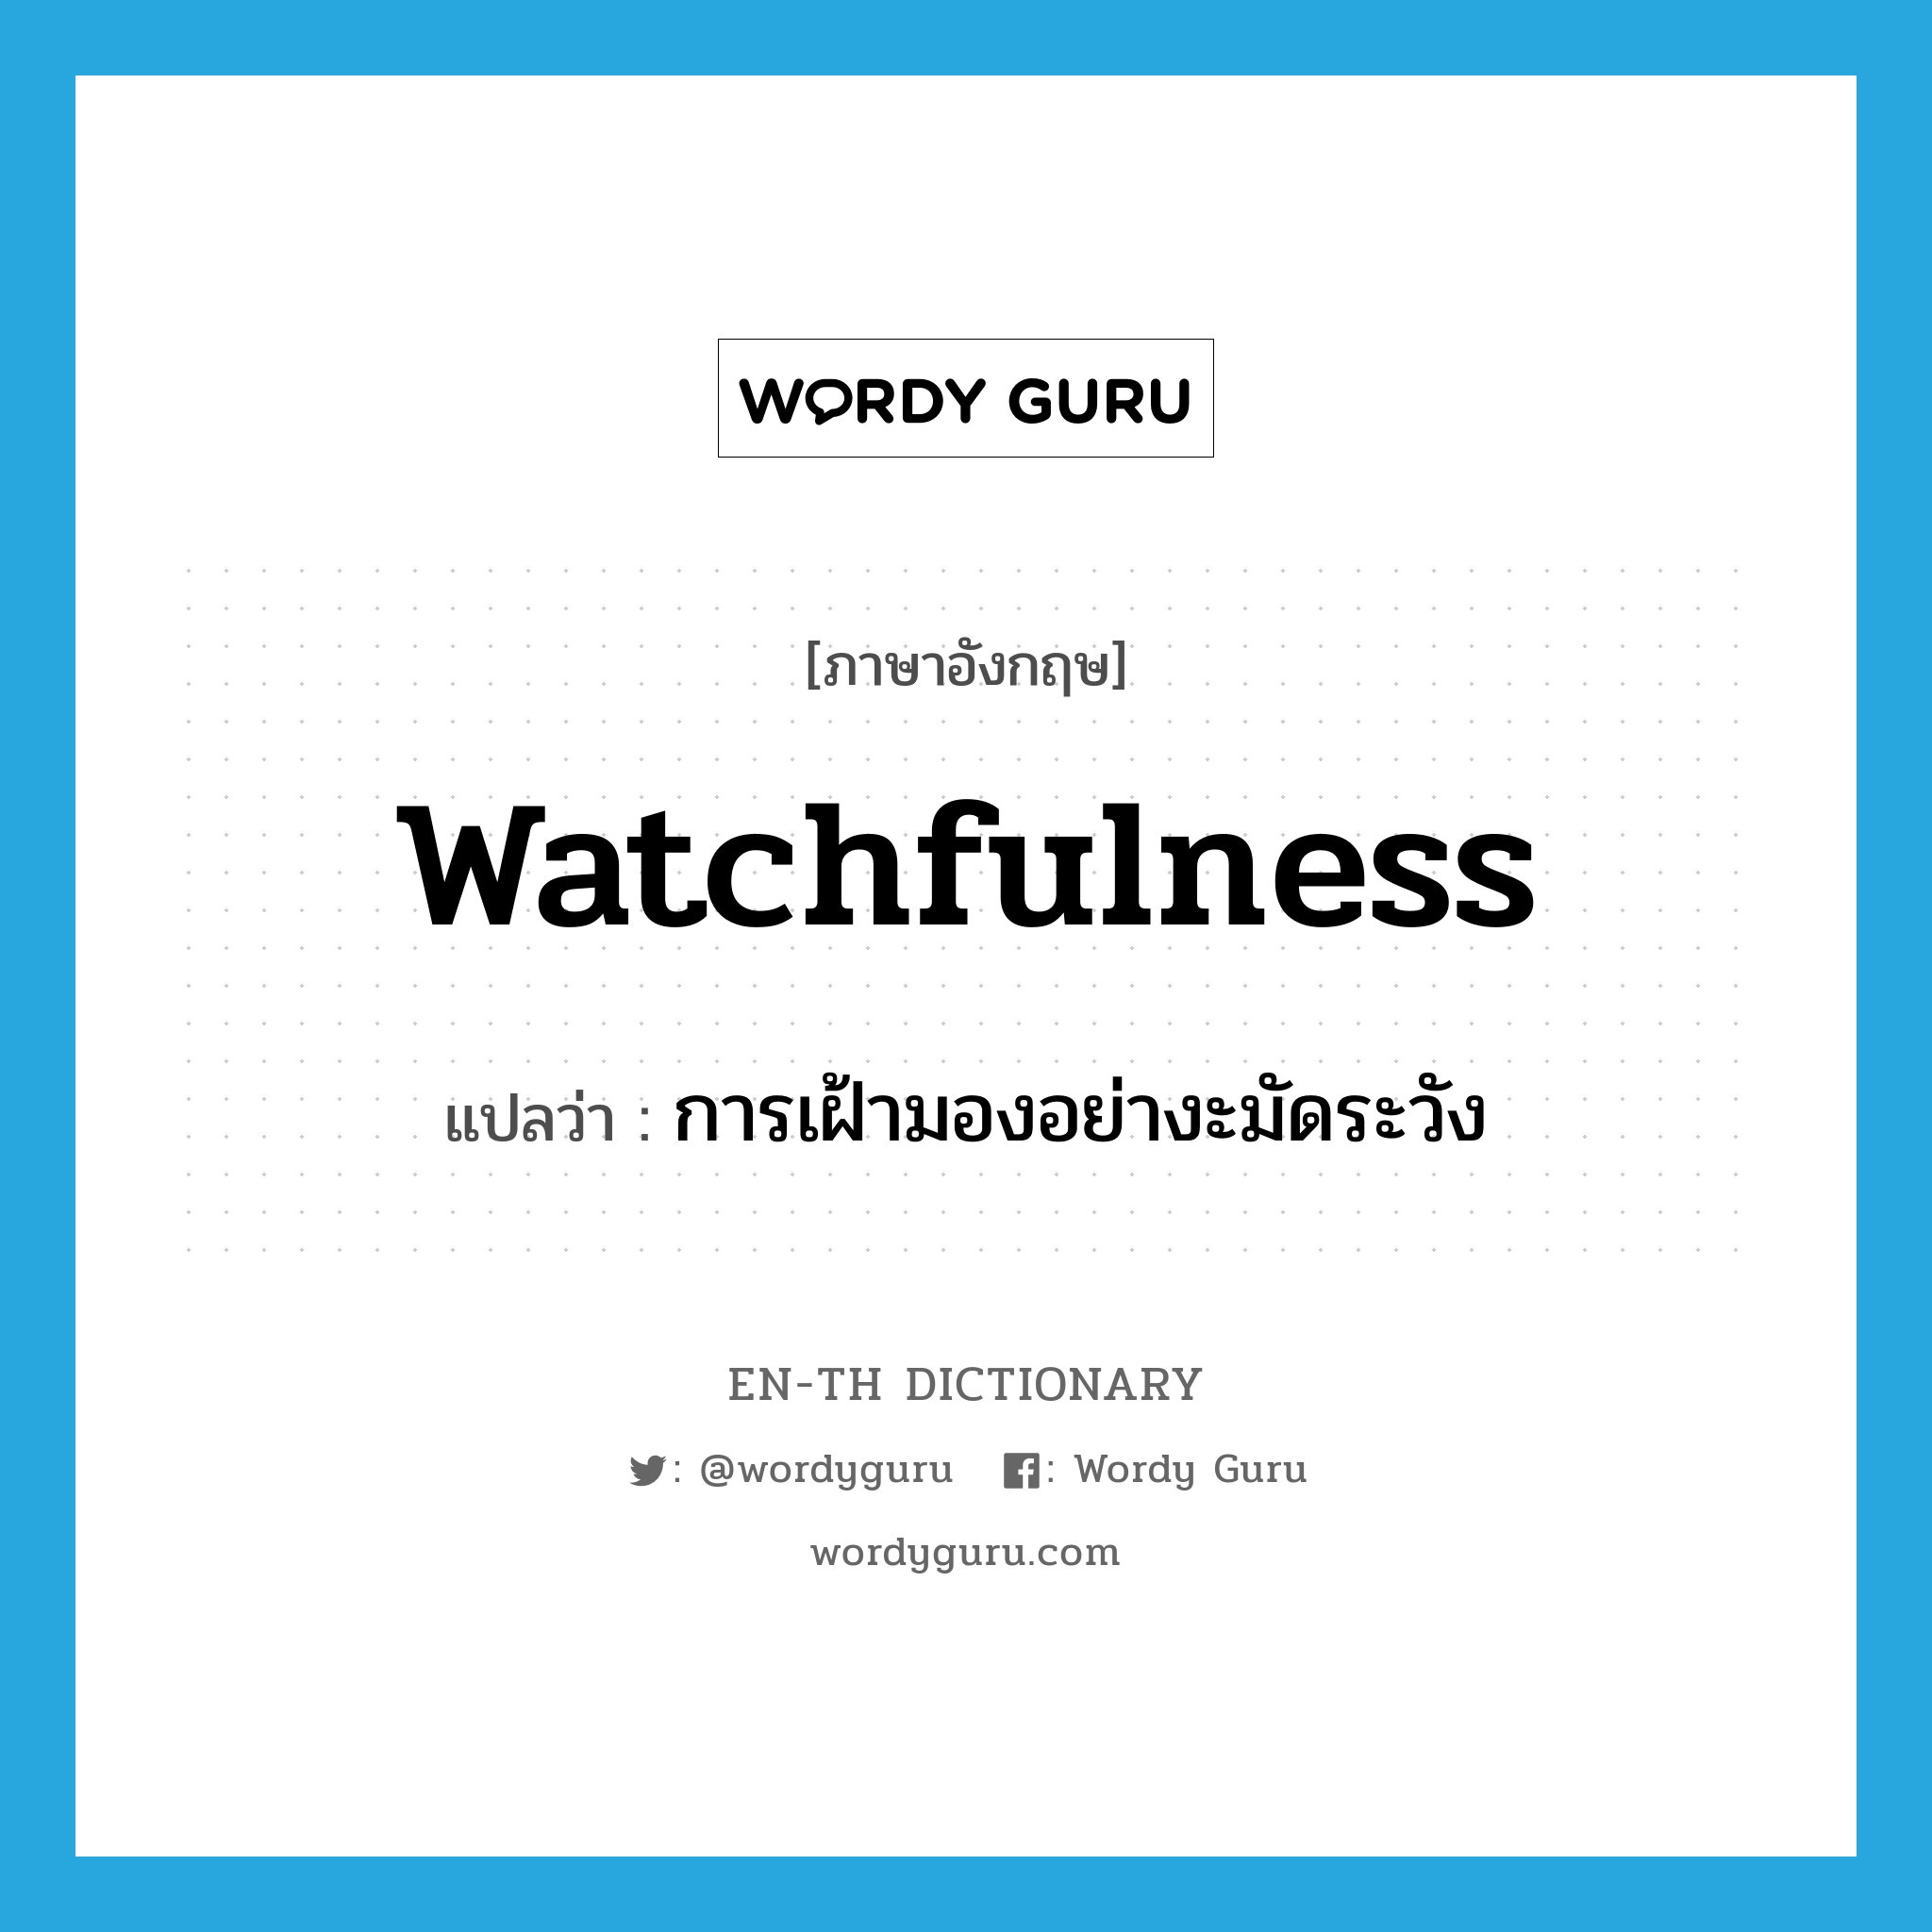 การเฝ้ามองอย่างะมัดระวัง ภาษาอังกฤษ?, คำศัพท์ภาษาอังกฤษ การเฝ้ามองอย่างะมัดระวัง แปลว่า watchfulness ประเภท N หมวด N